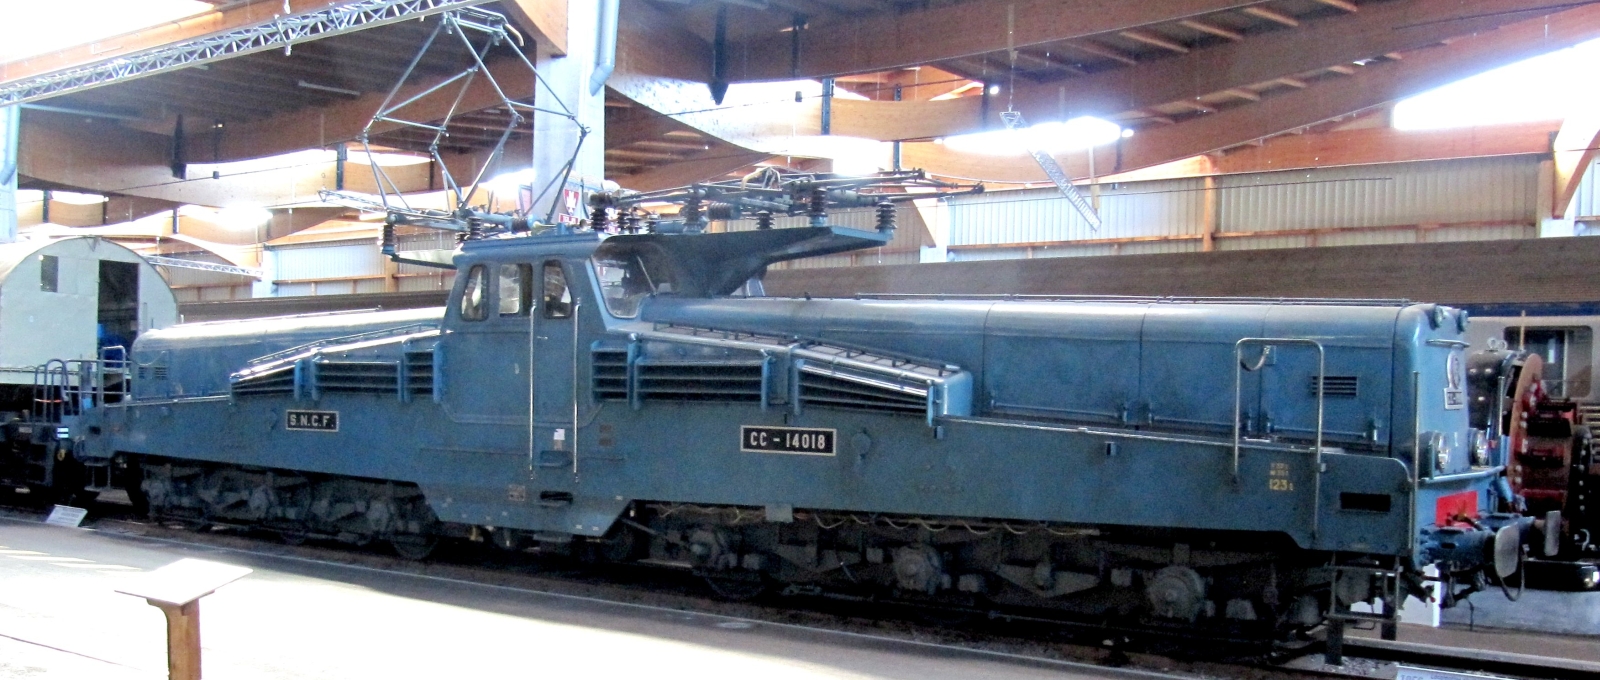 CC 14018 in the “Cité du Train” in Mulhouse